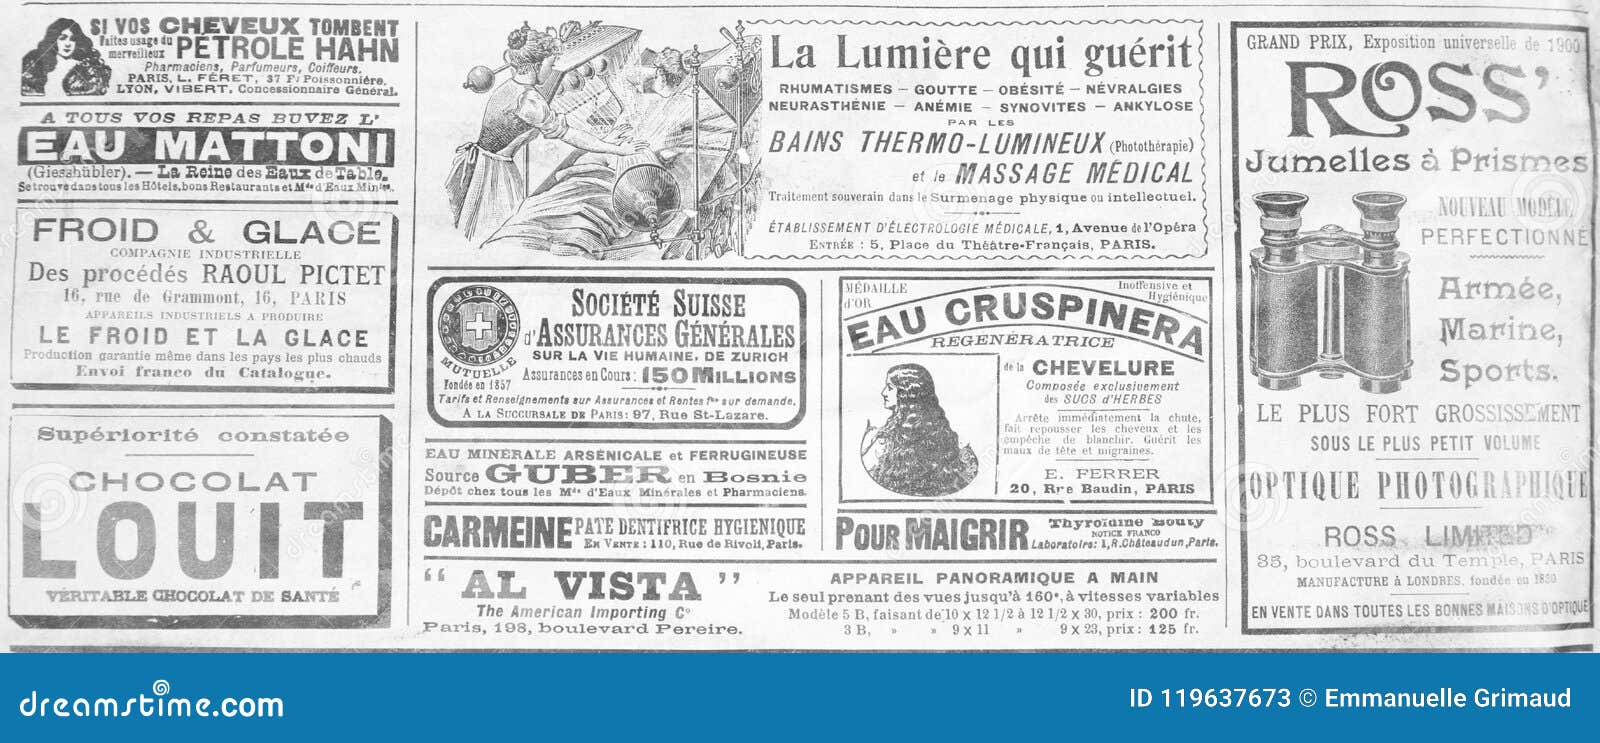 Gammal fransk publicitet från slutet av det 19th århundradet. Gammal fransk publicitet från det sent - århundrade för th 19 från en tidning